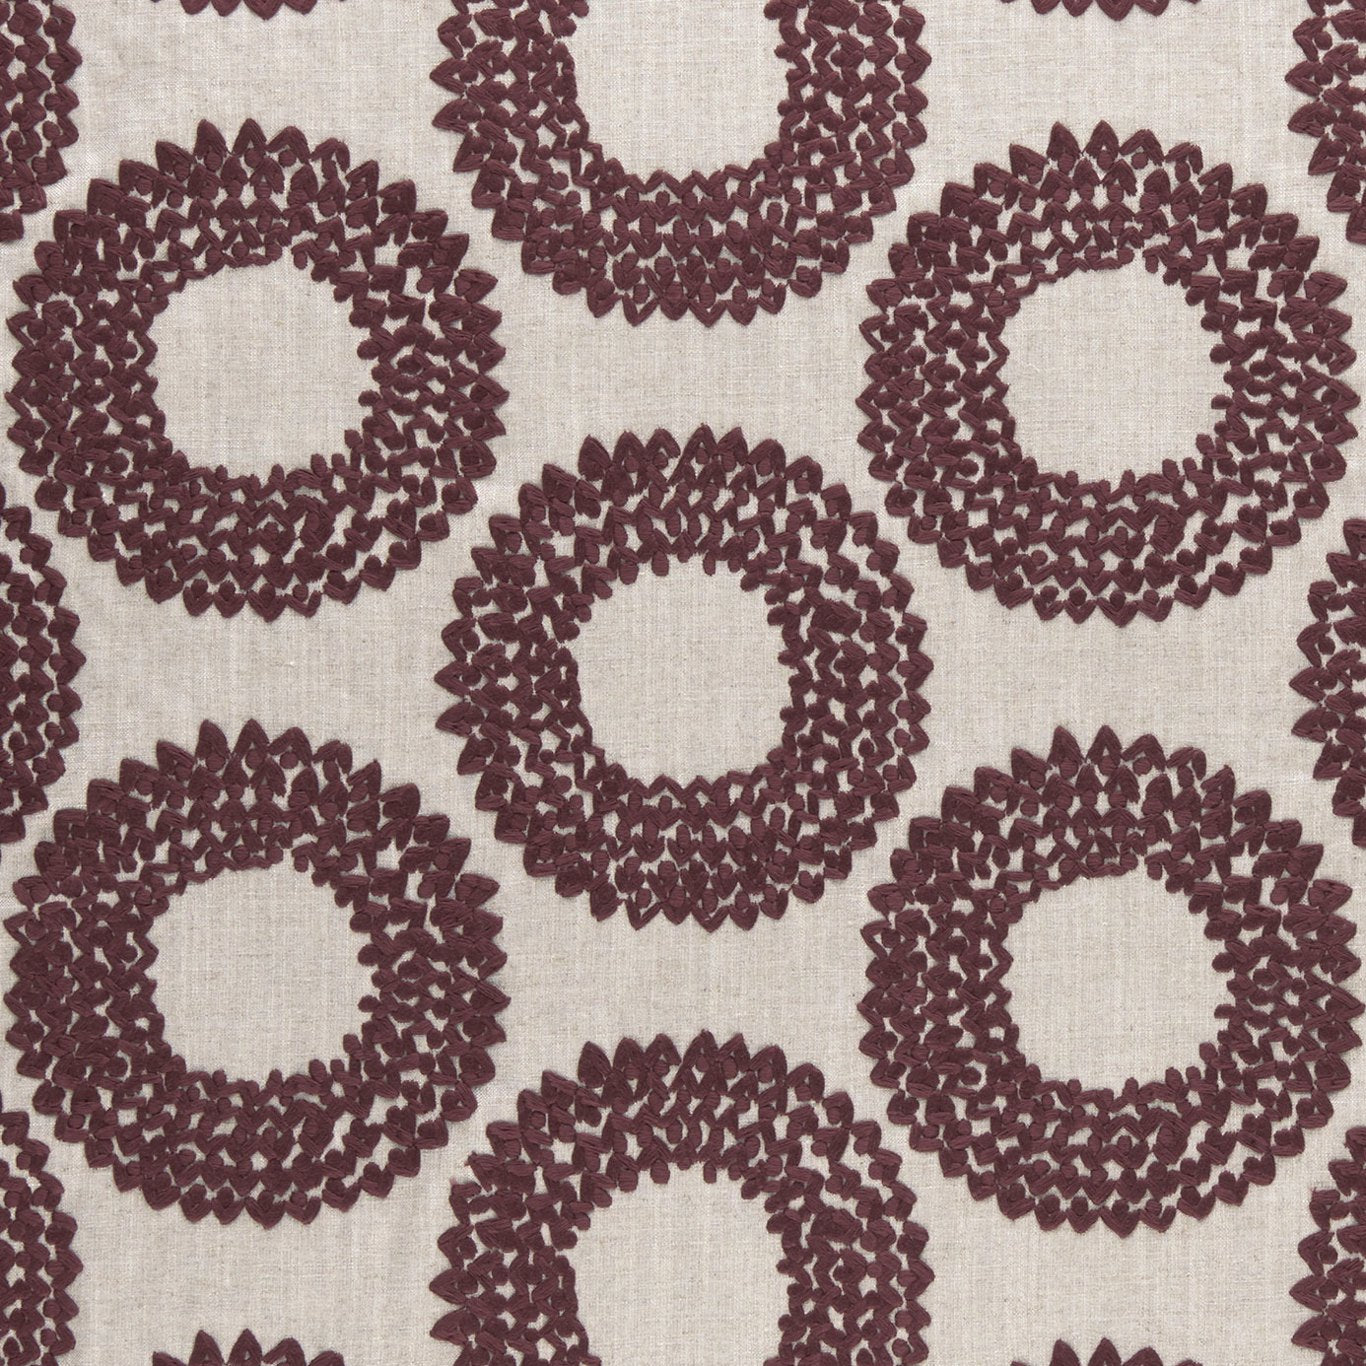 Dashiki Fabric by Clarke & Clarke - F0954/04 - Plum